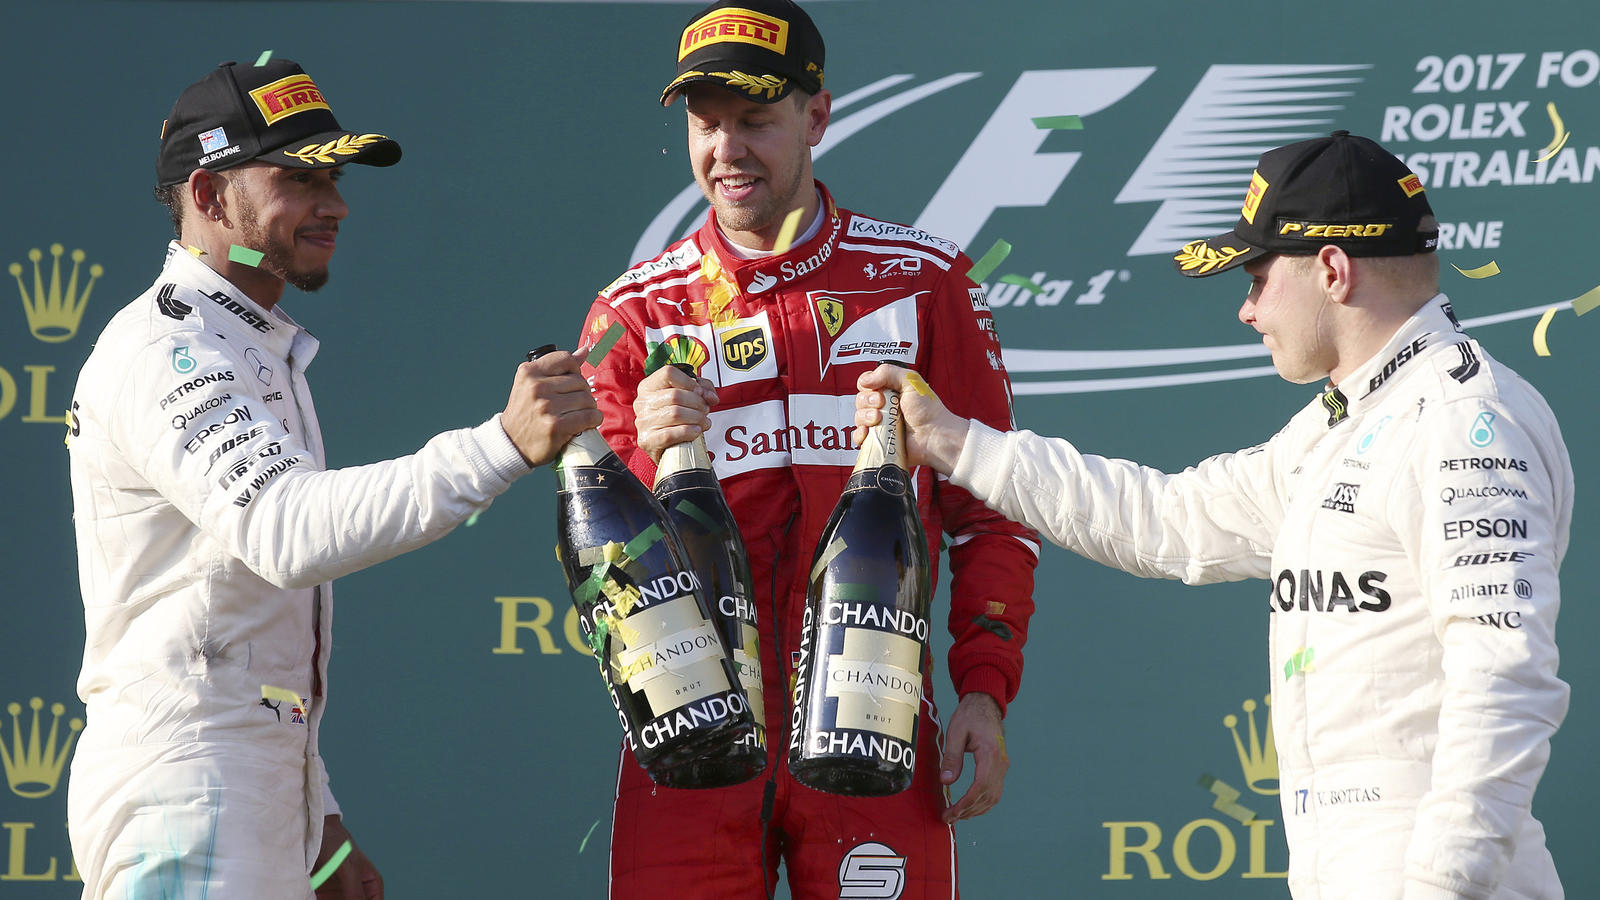 Motorsport: Formel-1-Weltmeisterschaft, Grand Prix von Australien, am 26.03.2017 in Melbourne (Australien). Der Deutsche Sebastian Vettel (M) vom Team Scuderia Ferrari steht nach seinem Sieg mit dem zweitplatzierten Briten Lewis Hamilton (l) vom Team